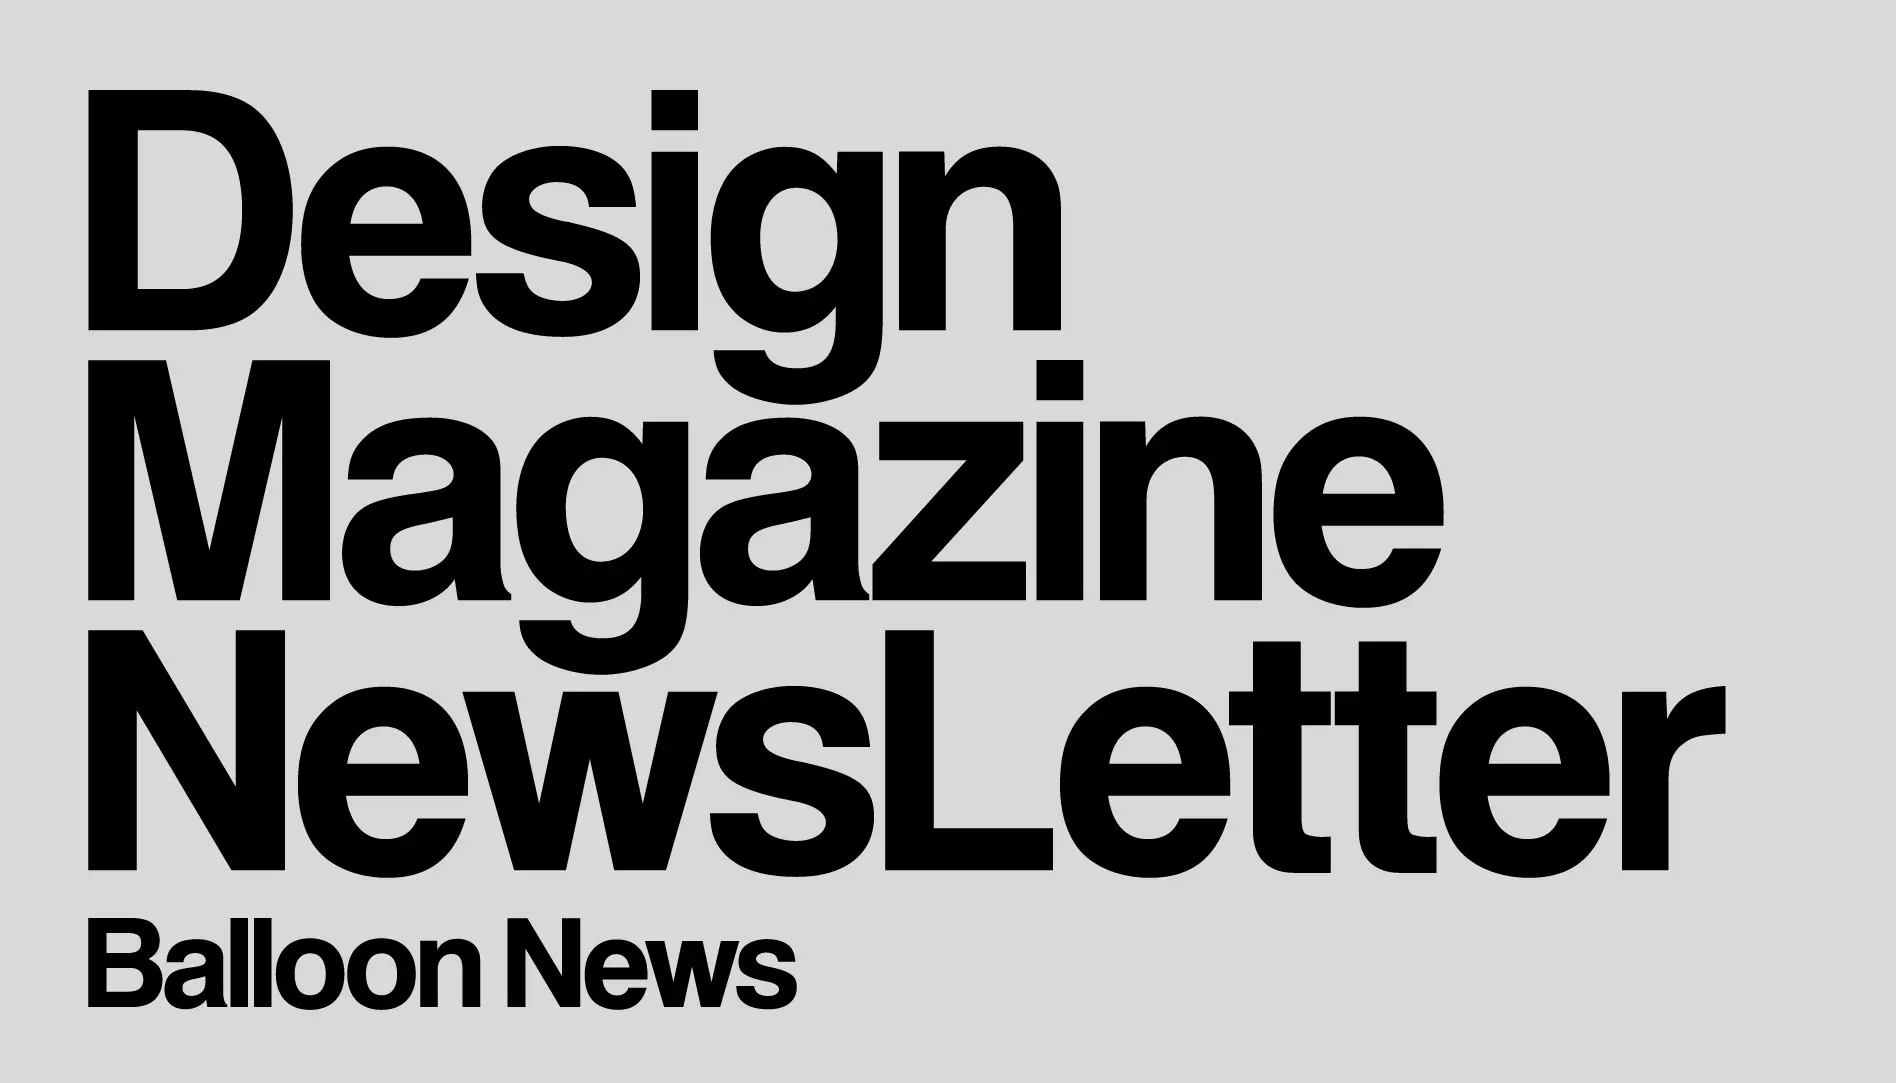 Newsletter cover design